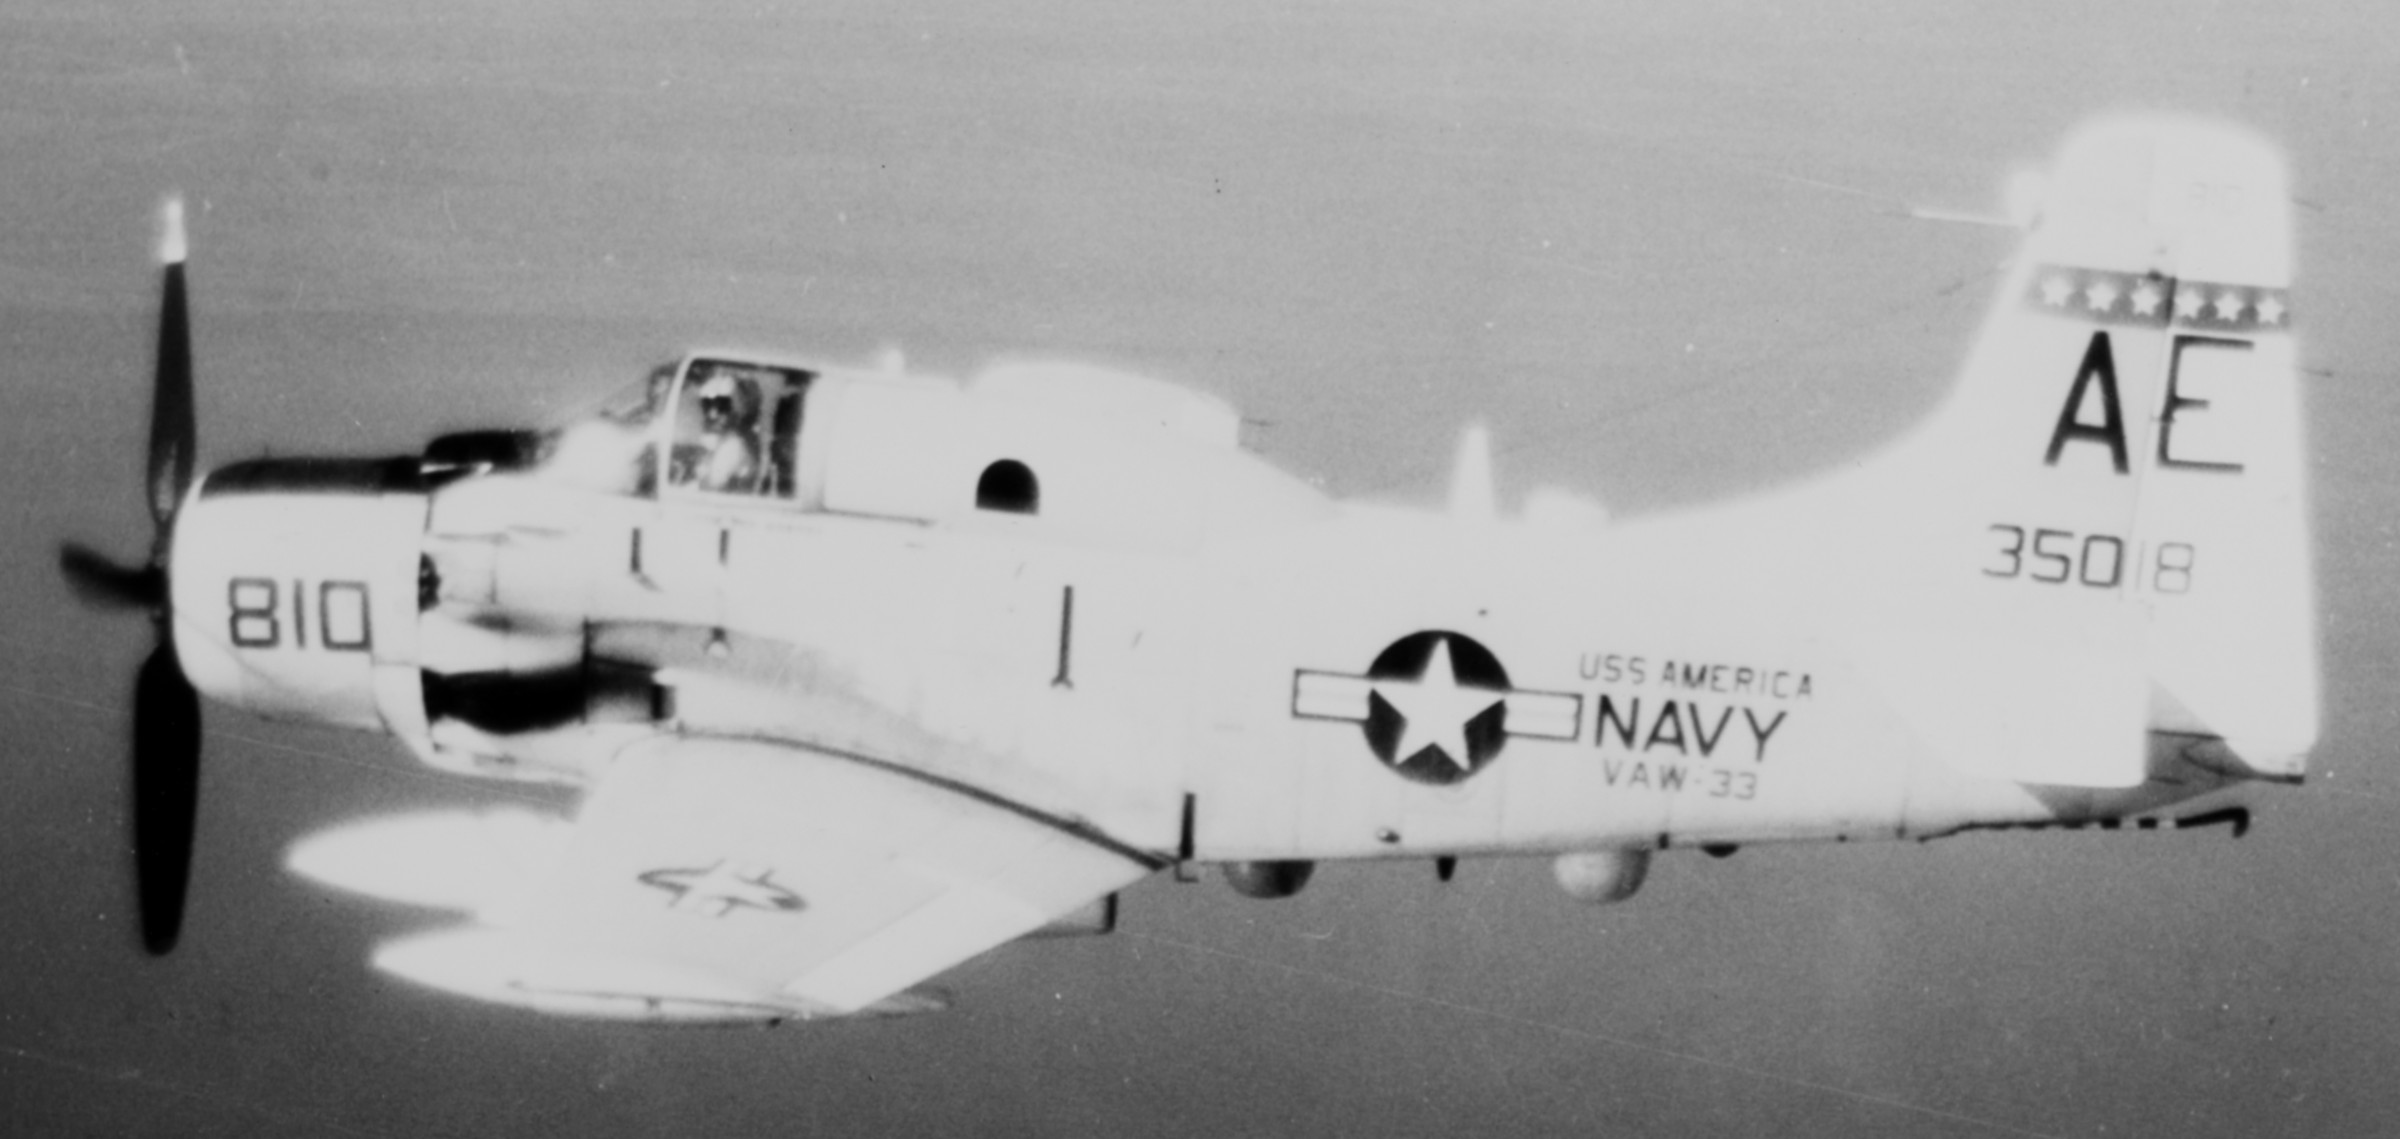 vaw-33 nighthawks carrier airborne early warning squadron caraewron us navy ea-1f skyraider cvw-6 uss america cva-66 11